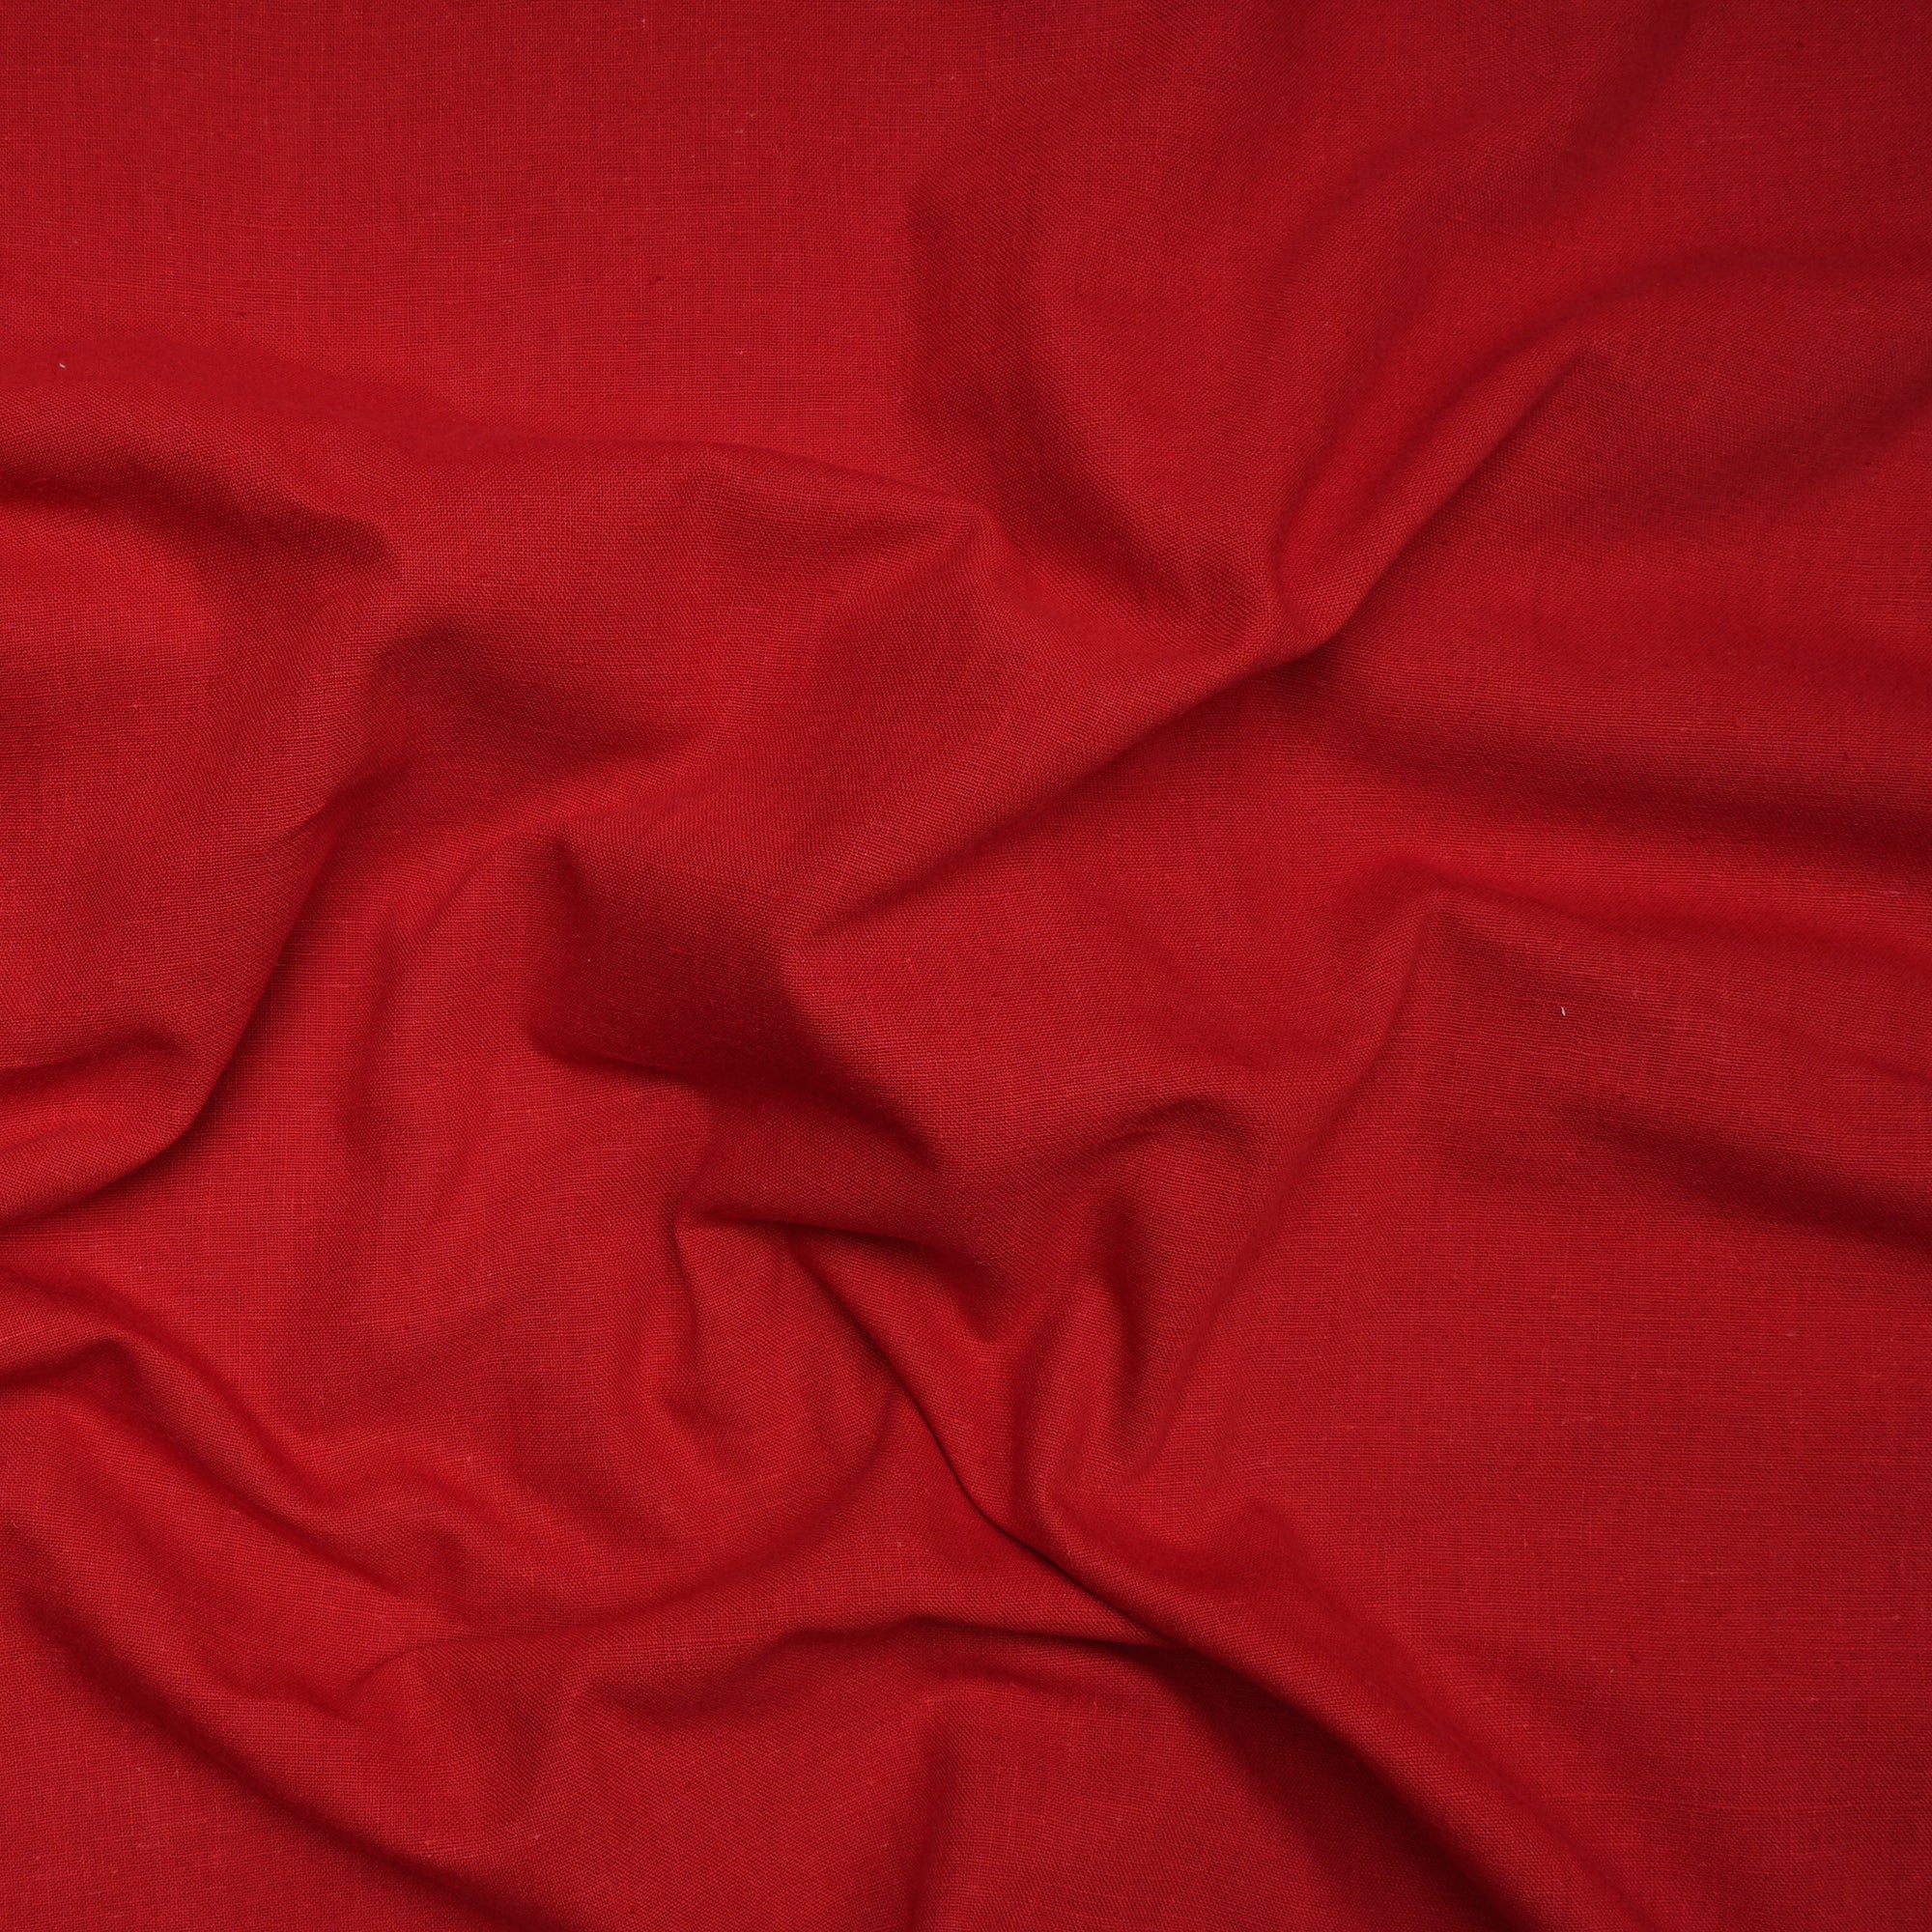 Red Handspun Handwoven Muslin Cotton Fabric